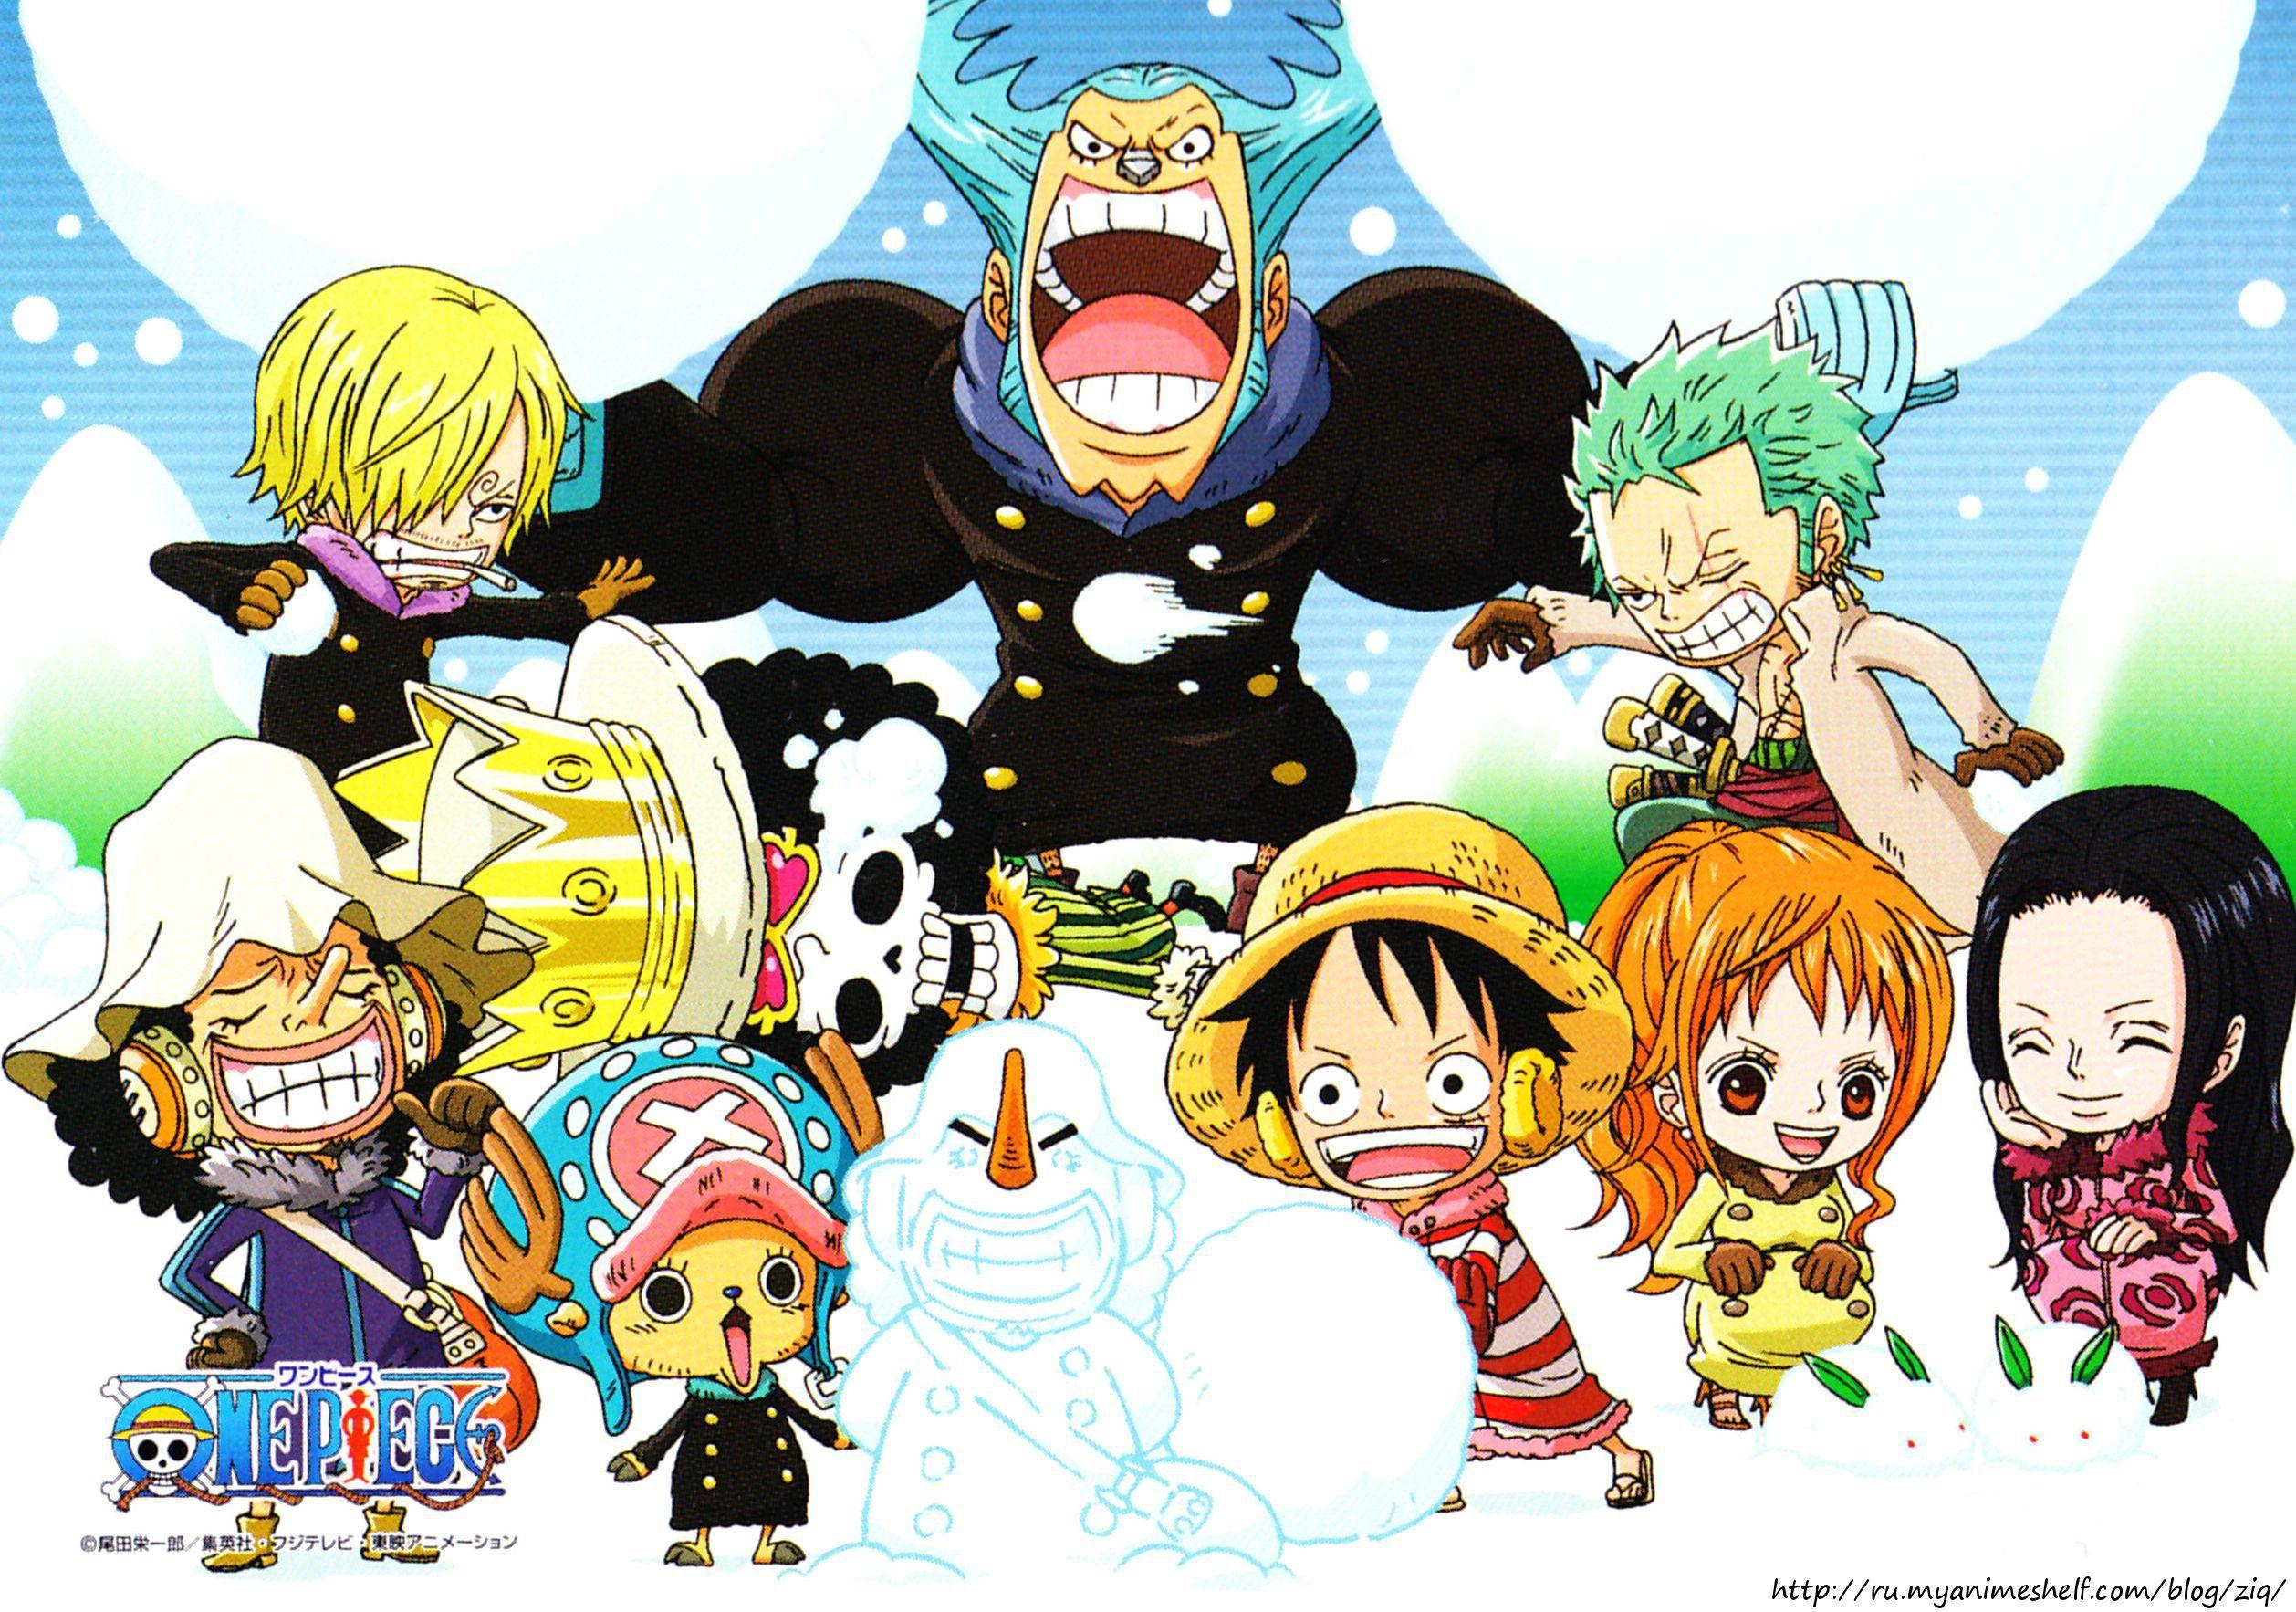 Hình nền chibi One Piece là một lựa chọn tuyệt vời cho những ai yêu thích bộ truyện Thám tử lừng danh Conan, bởi vì cũng như Conan, những nhân vật chibi trong One Piece cũng rất dễ thương và hài hước. Hãy truy cập ngay để tải và sử dụng những hình nền chibi One Piece độc đáo và mới nhất.